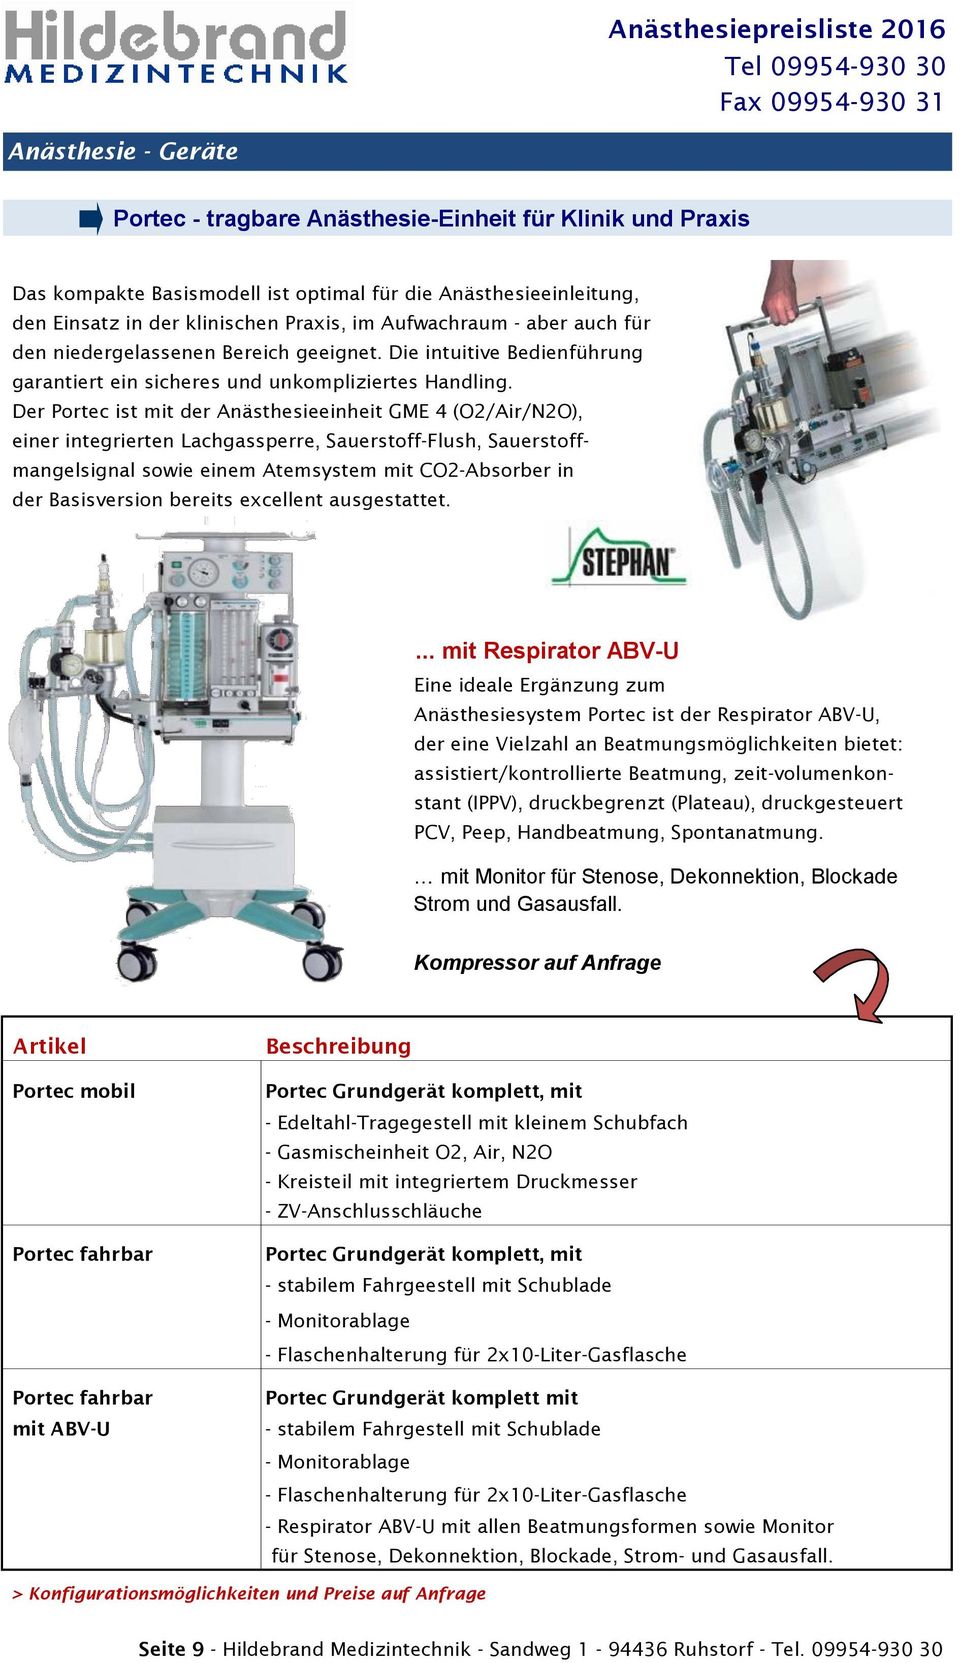 Der Portec ist mit der Anästhesieeinheit GME 4 (O2/Air/N2O), einer integrierten Lachgassperre, Sauerstoff-Flush, Sauerstoffmangelsignal sowie einem Atemsystem mit CO2-Absorber in der Basisversion